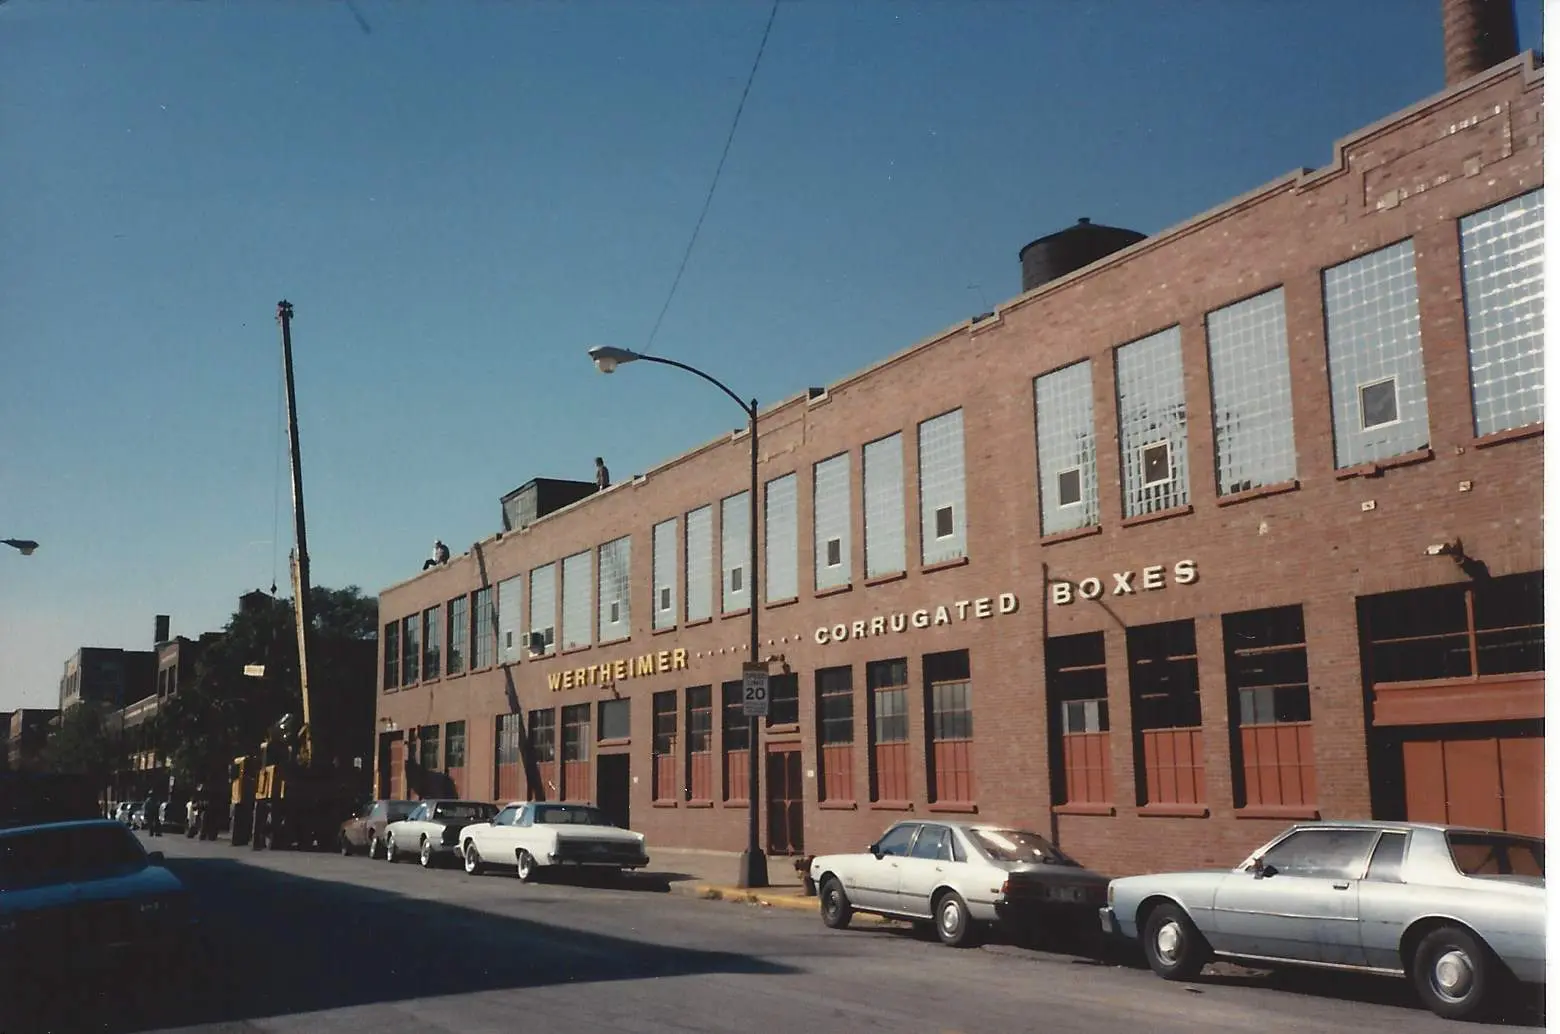 Wertheimer Box Corporations Original Plant in Chicago